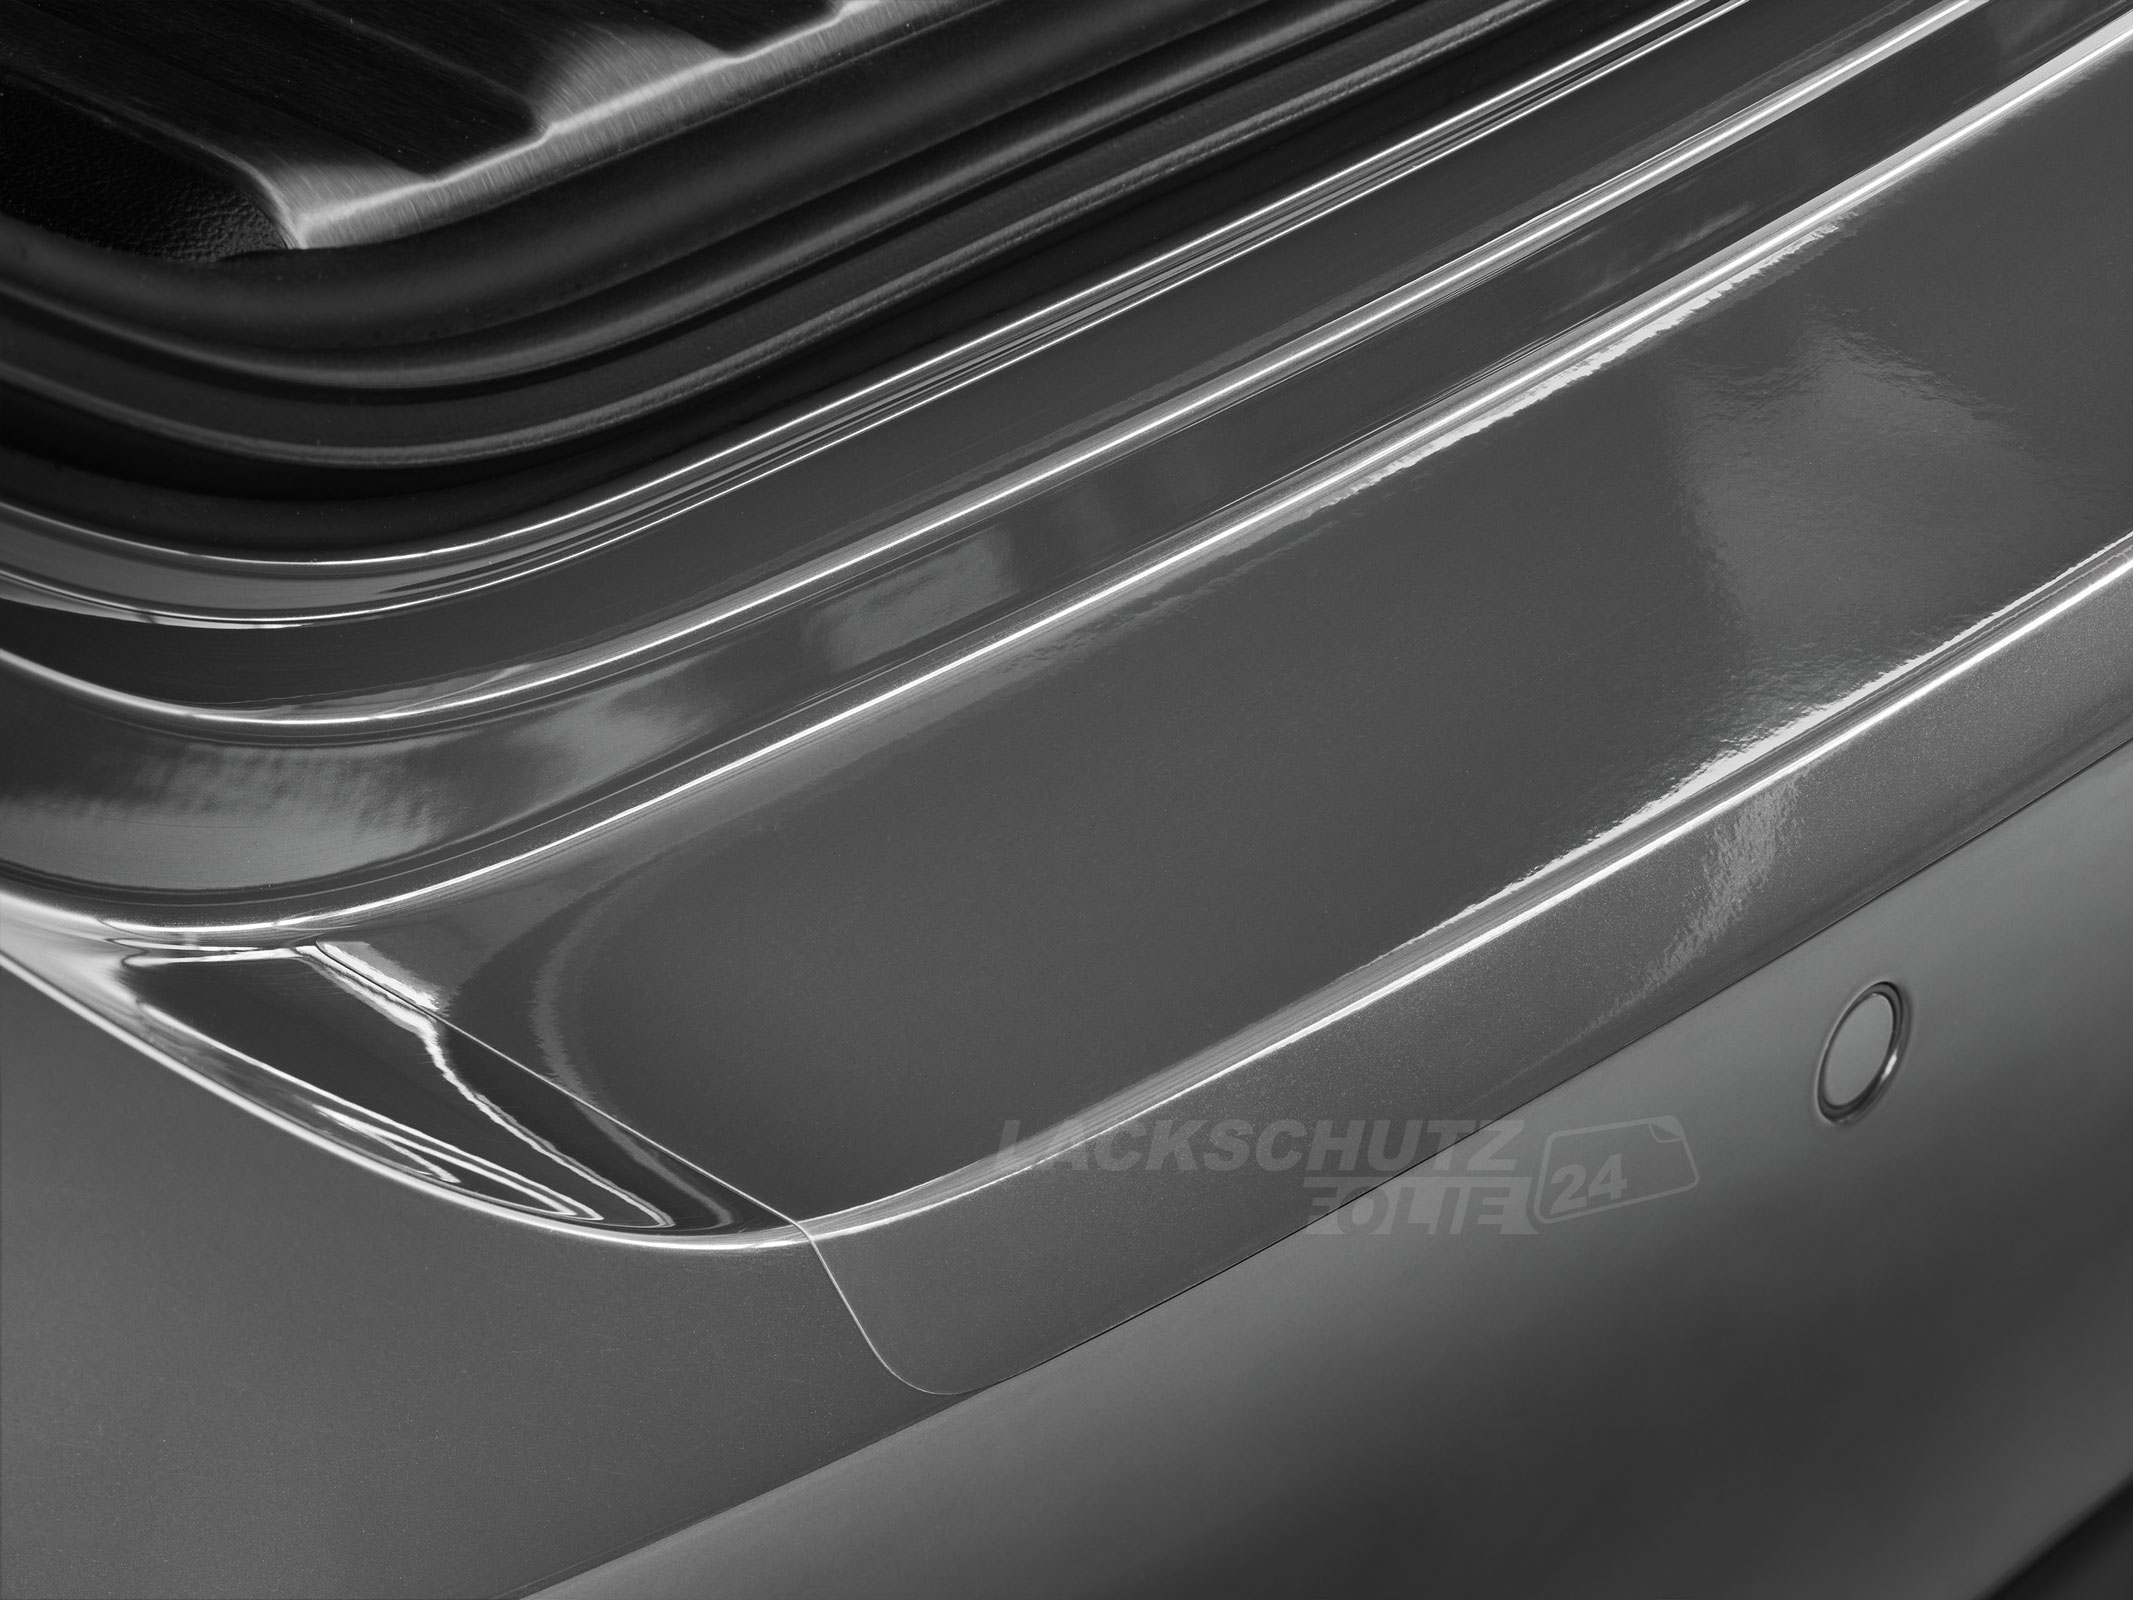 Ladekantenschutzfolie - Transparent Glatt Hochglänzend für VW / Volkswagen Passat Limousine B8, Typ 3G, ab BJ 11/2014 + Faceliftmodell